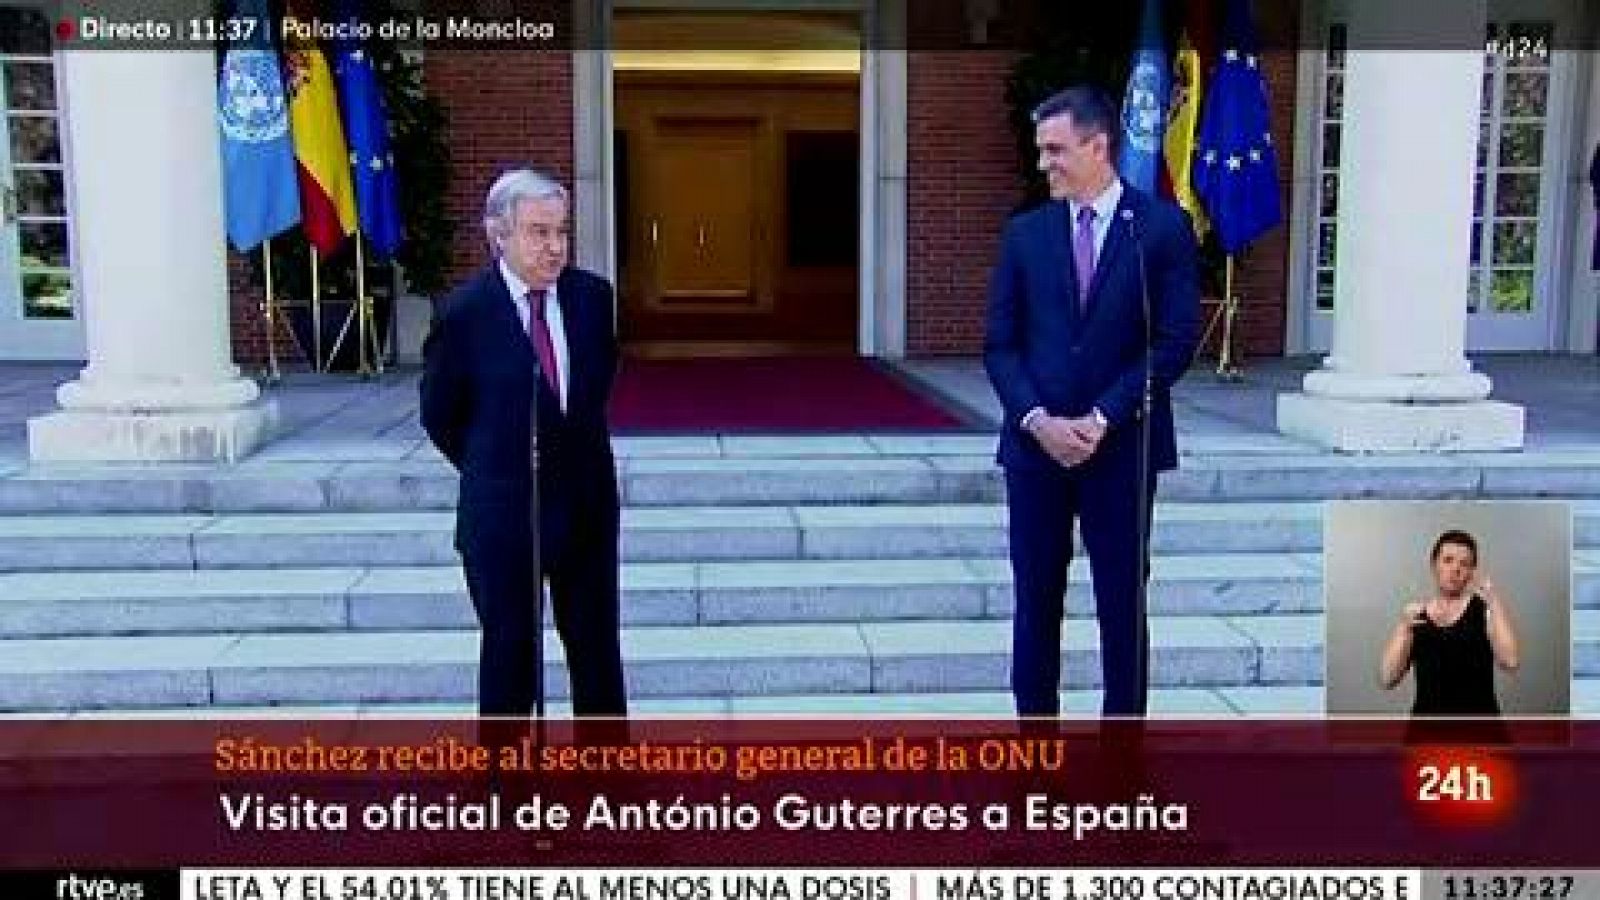 Guterres apoya el diálogo para resolver conflictos como el catalán